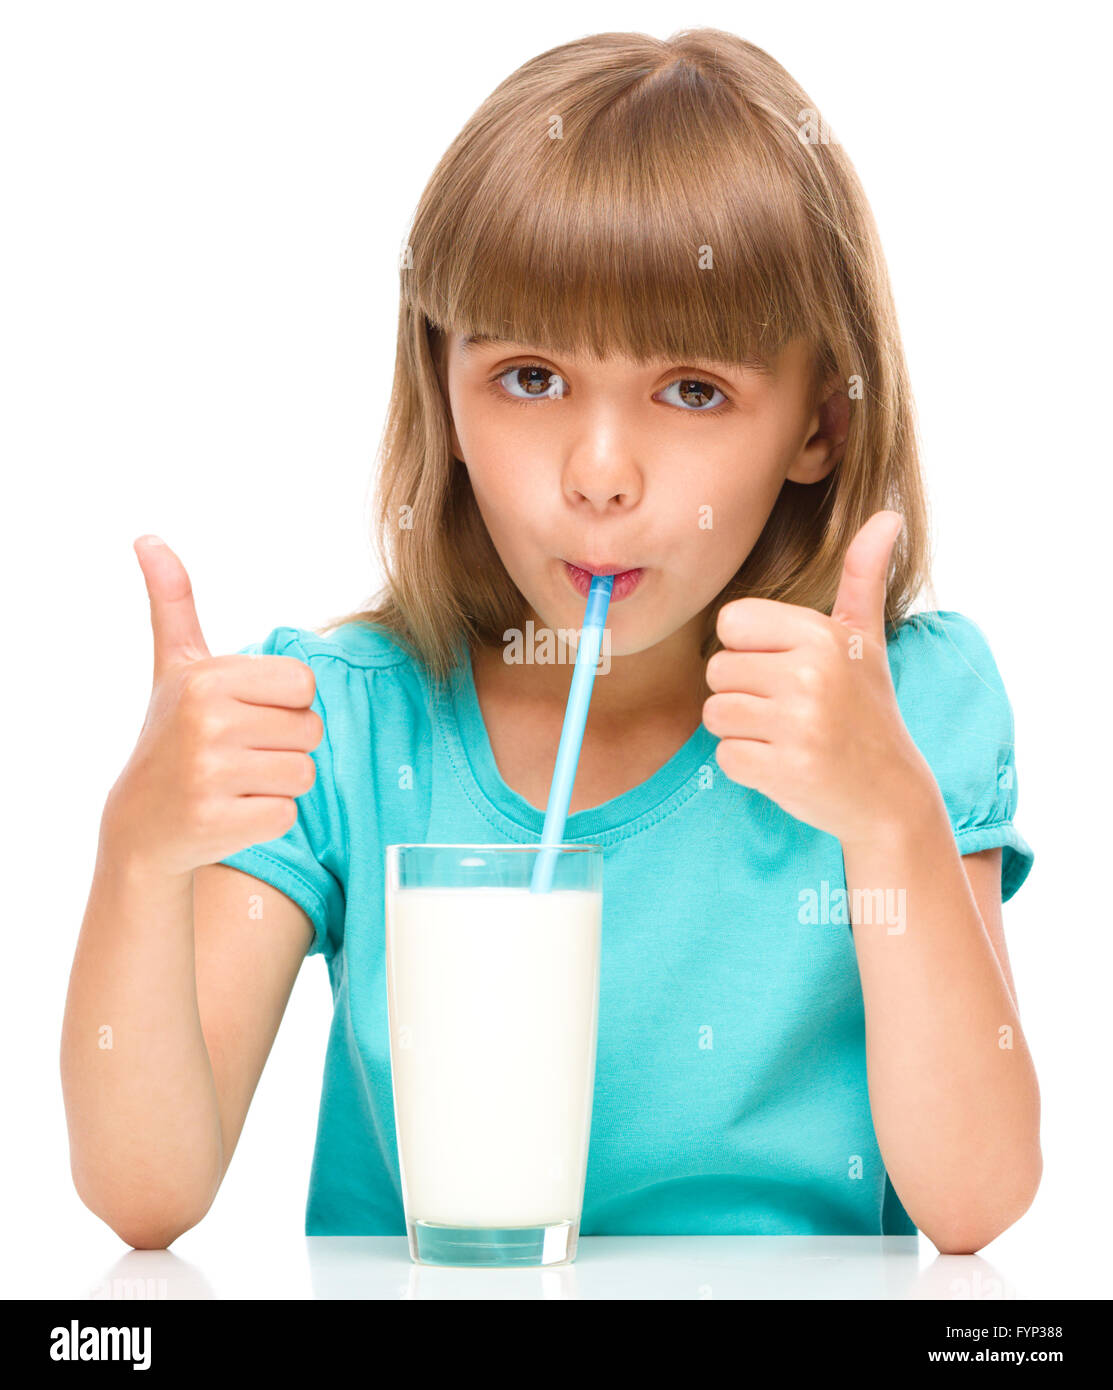 порно маленькая девочка в молоке фото 80